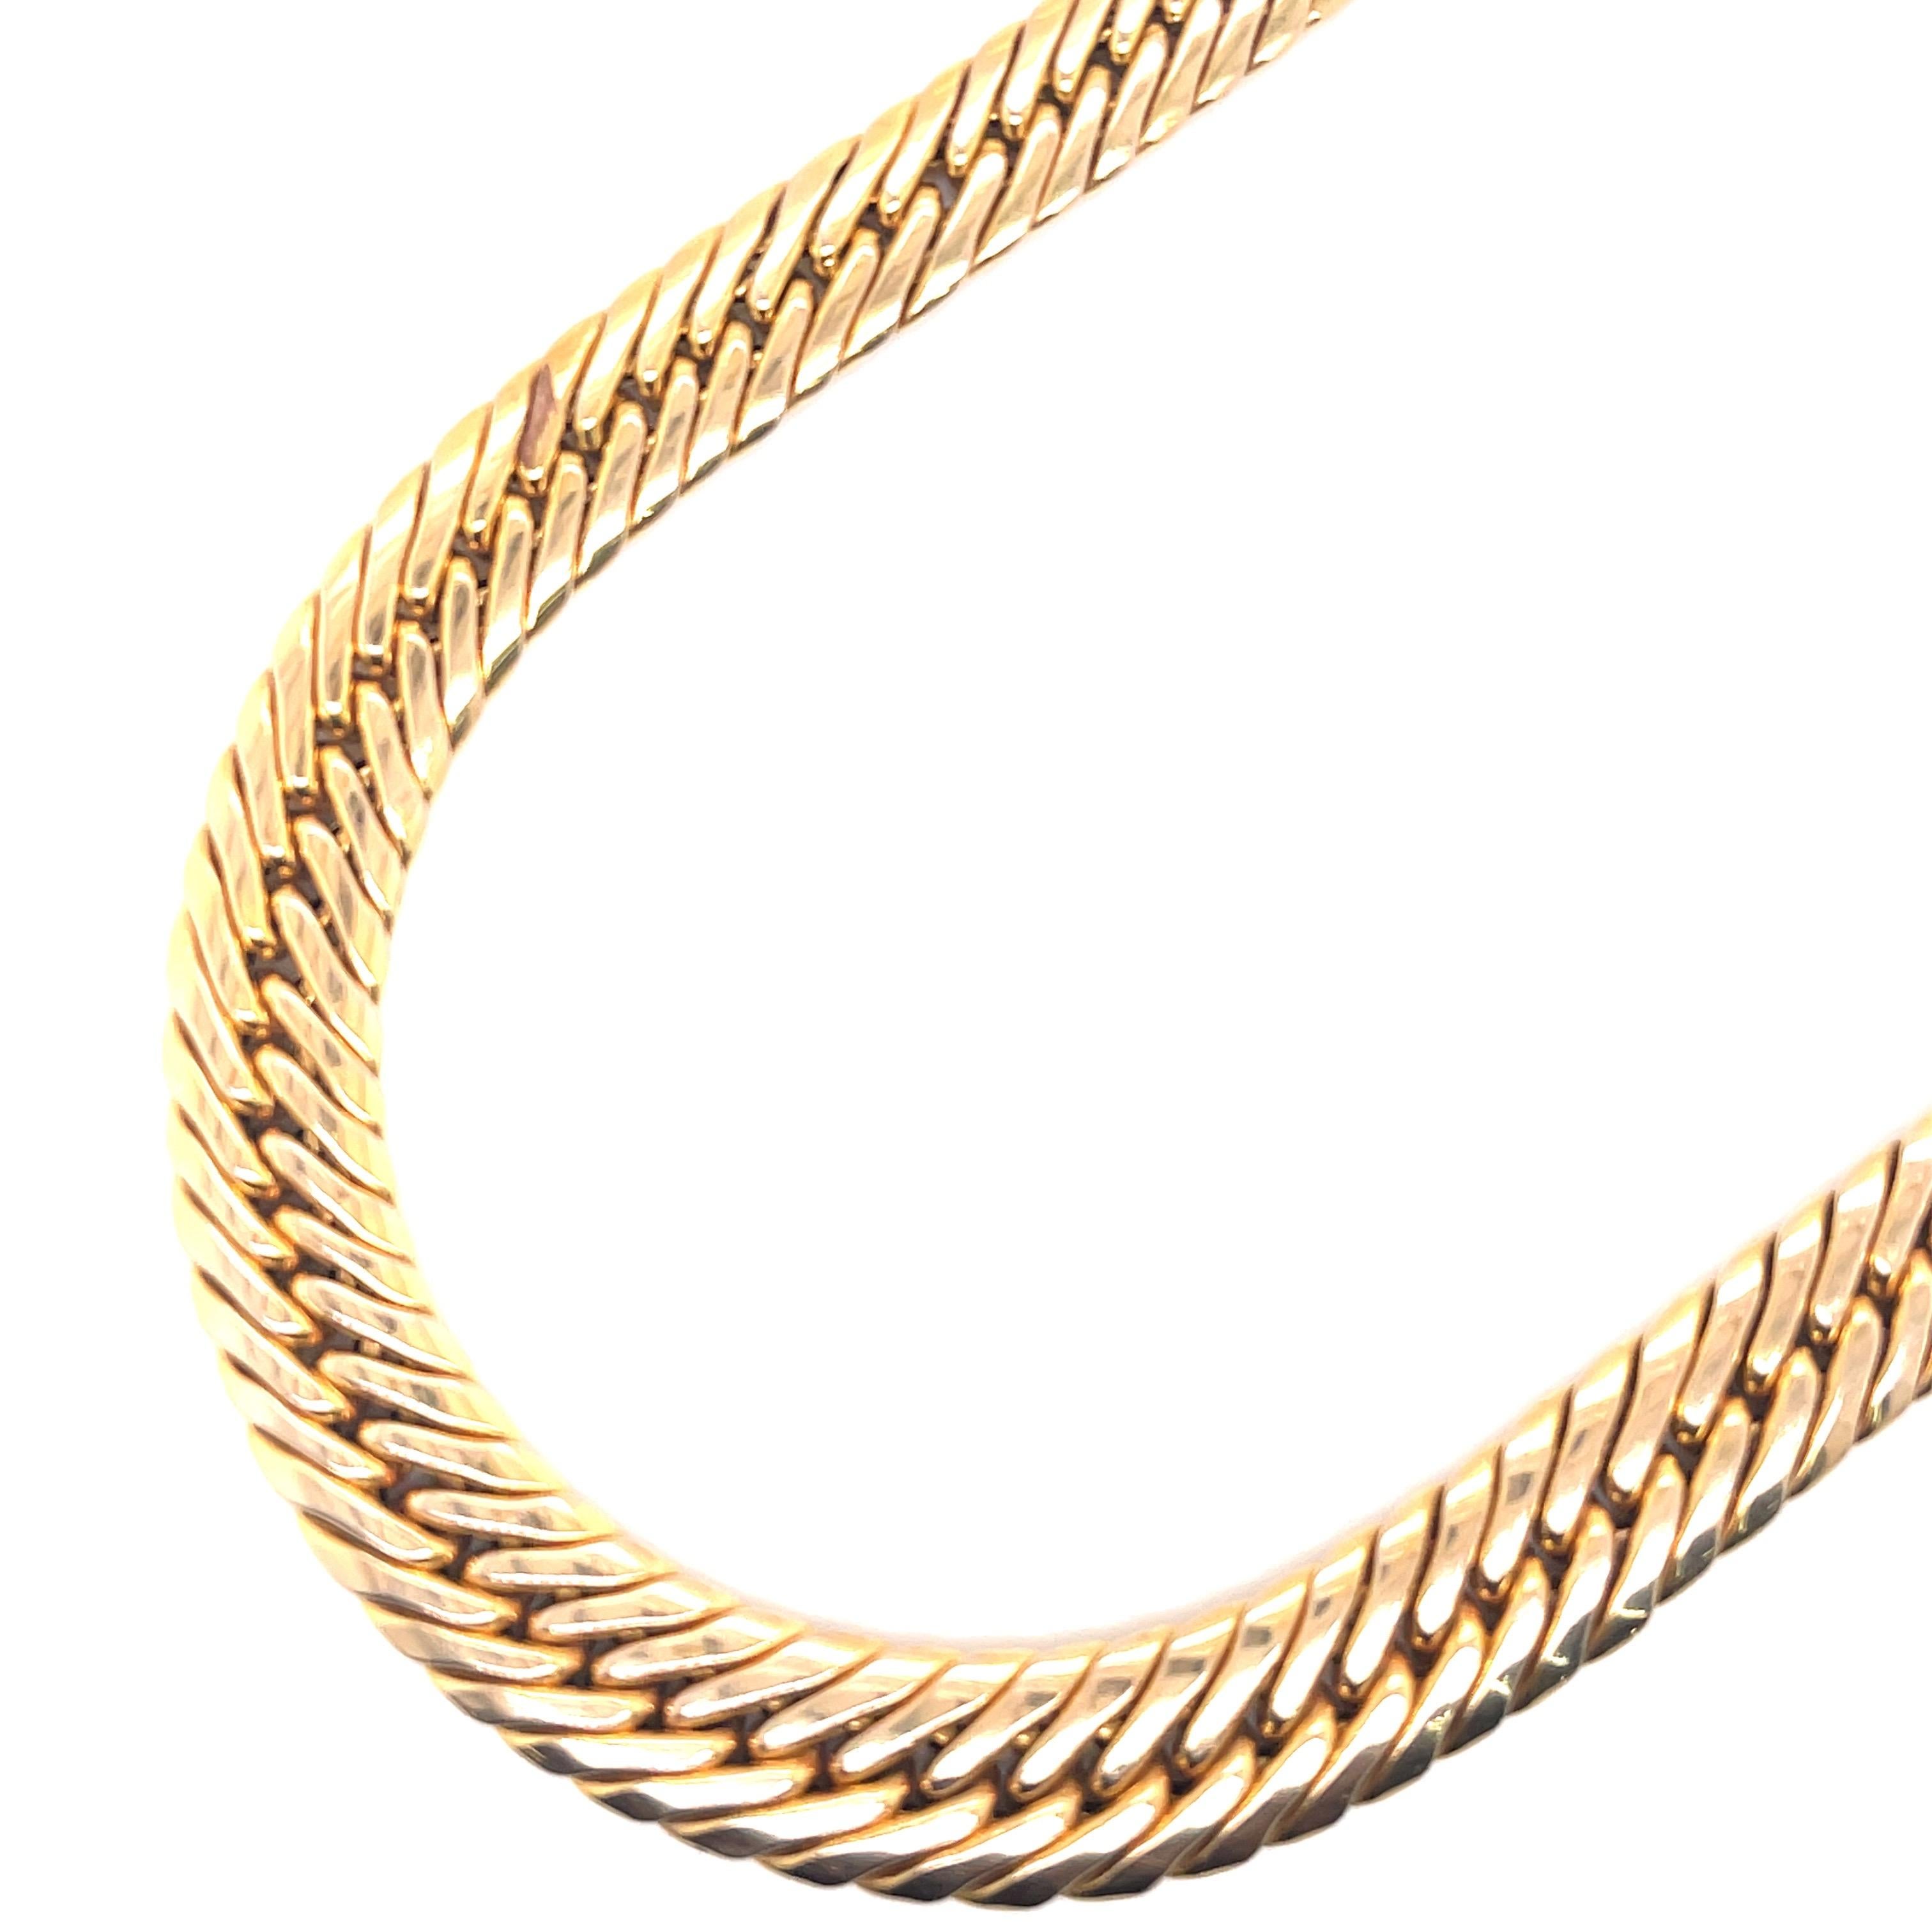 Signé UnoAErre, ce collier à motif de serpent est réalisé en or jaune 14 carats et pèse 36,1 grammes. 
Fabriqué en Italie